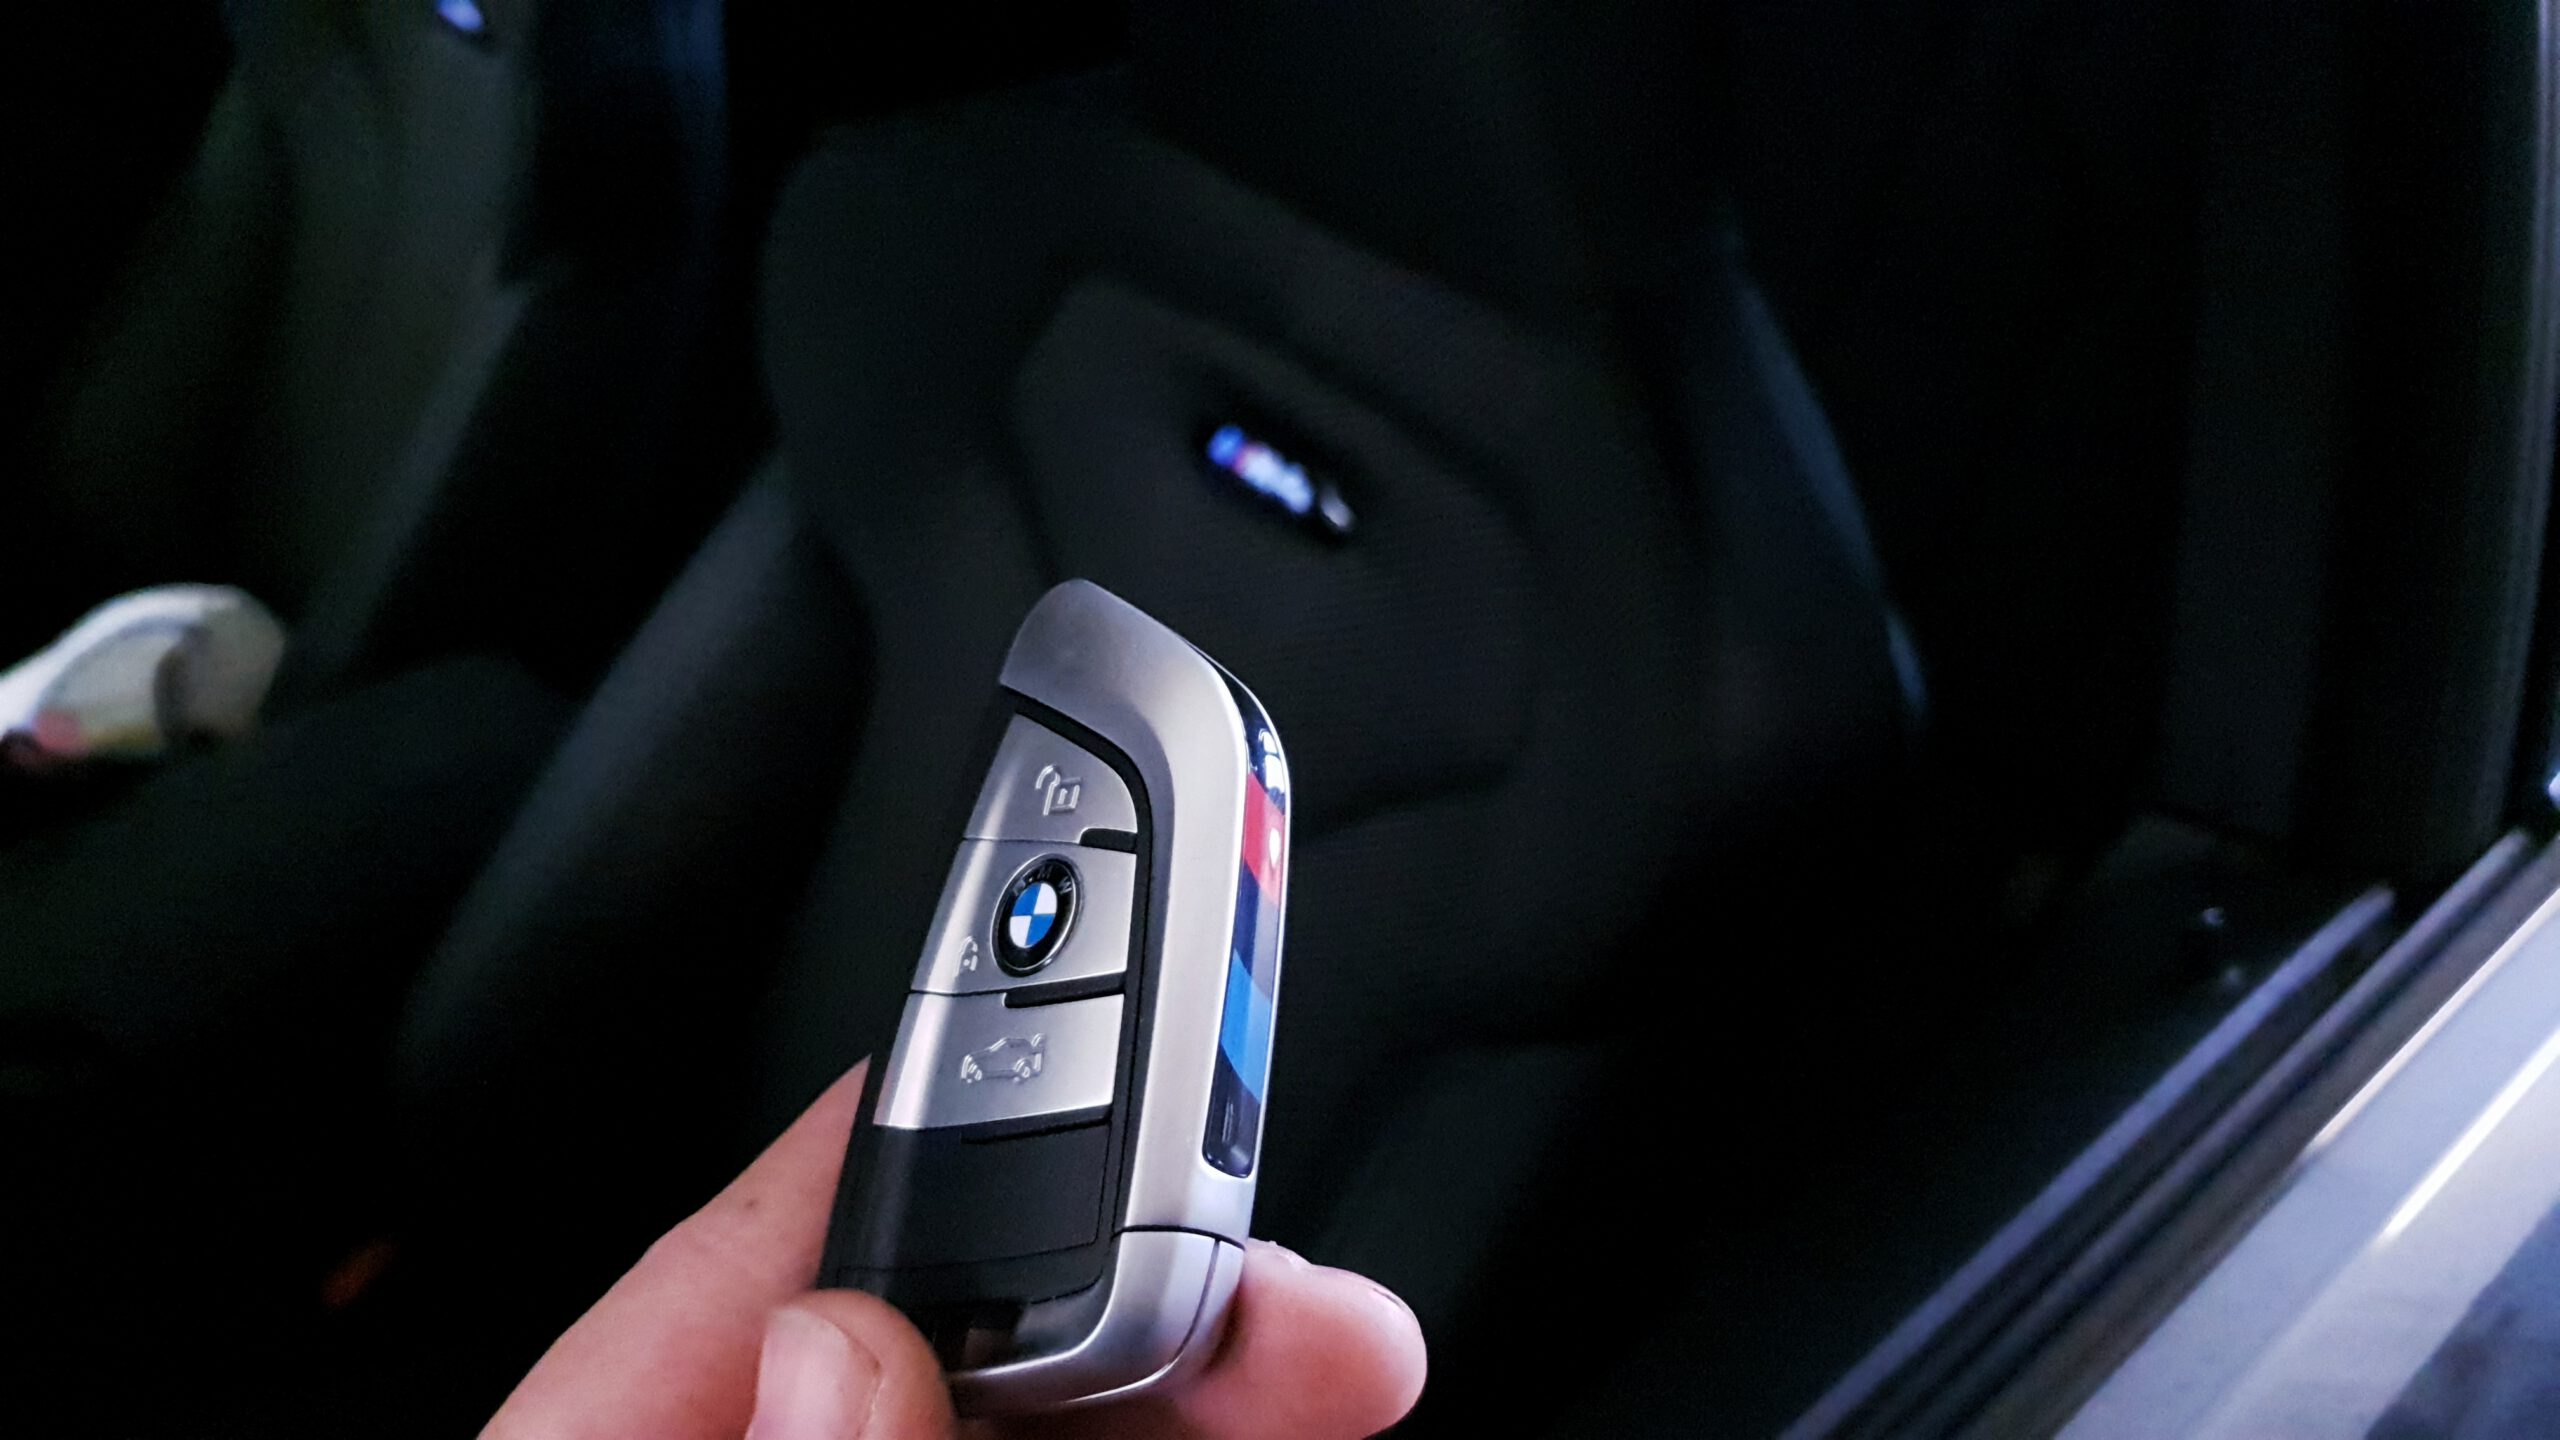 BMW 7er 2015: Display-Key als Auto-Schlüssel einer neuen Zeit